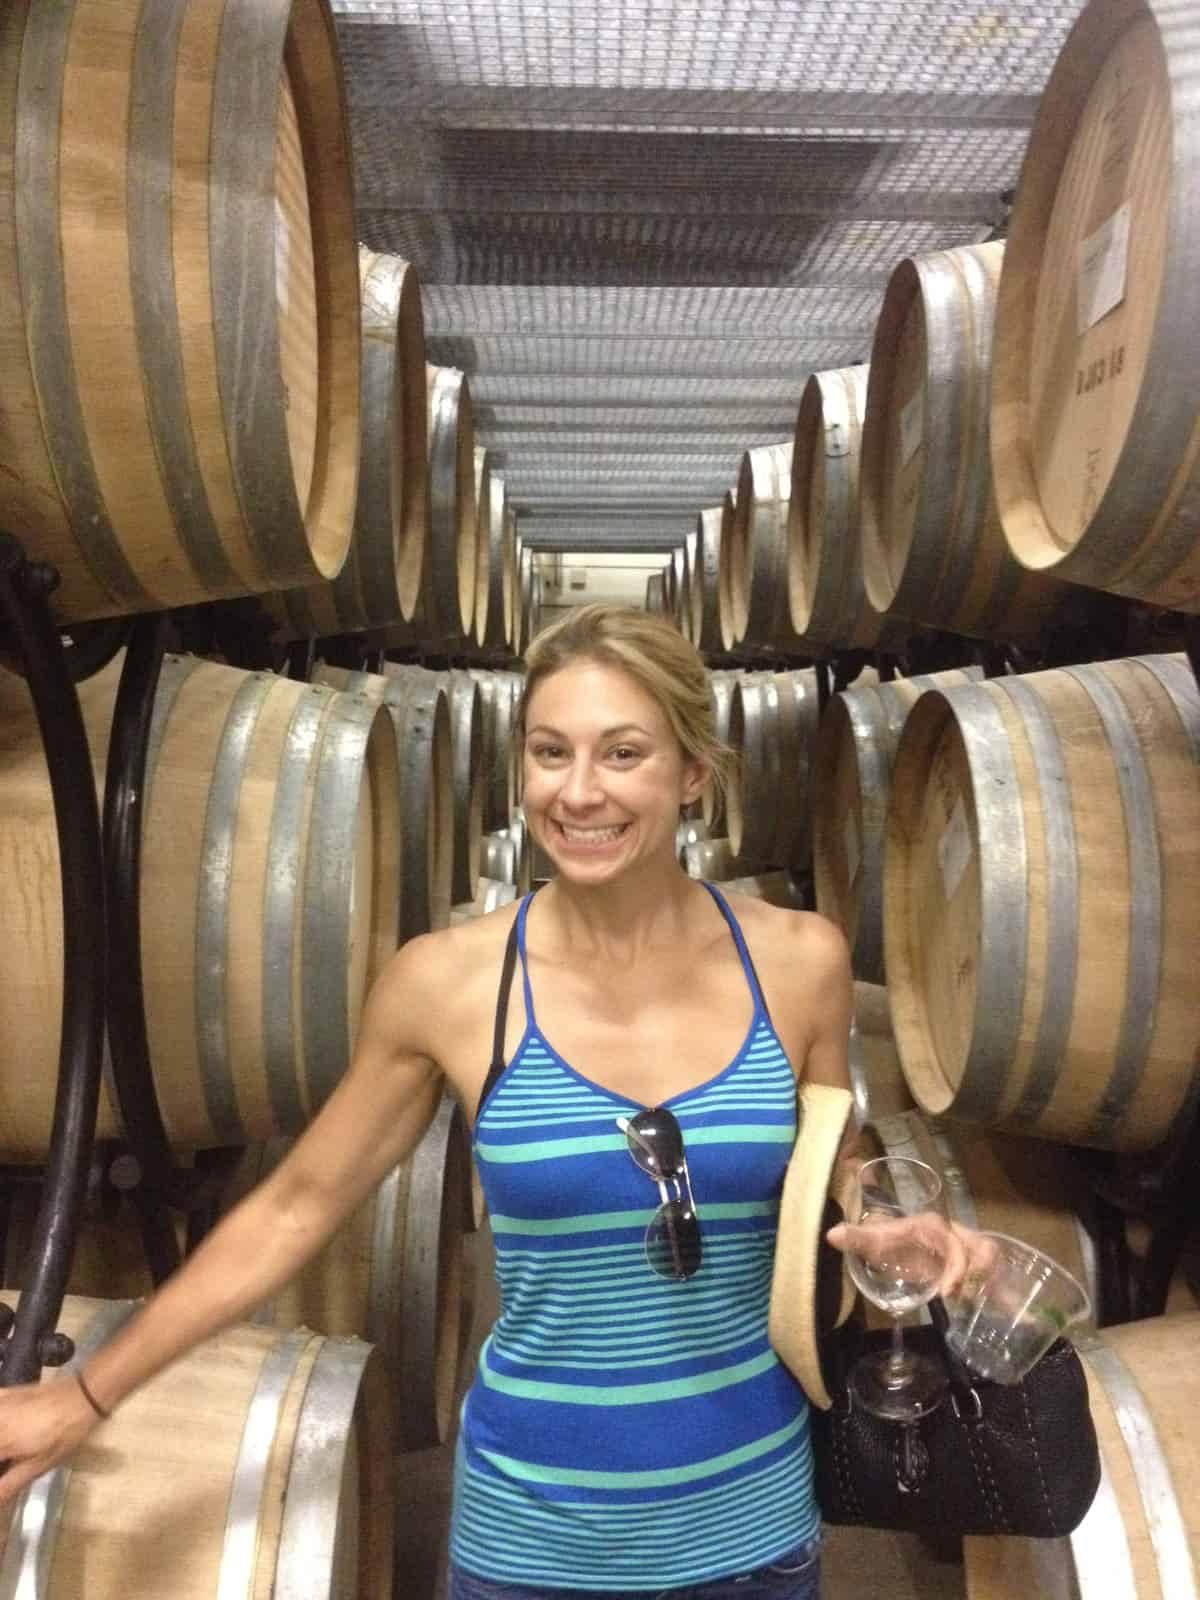 Standing in between barrels of wine in Napa Valley